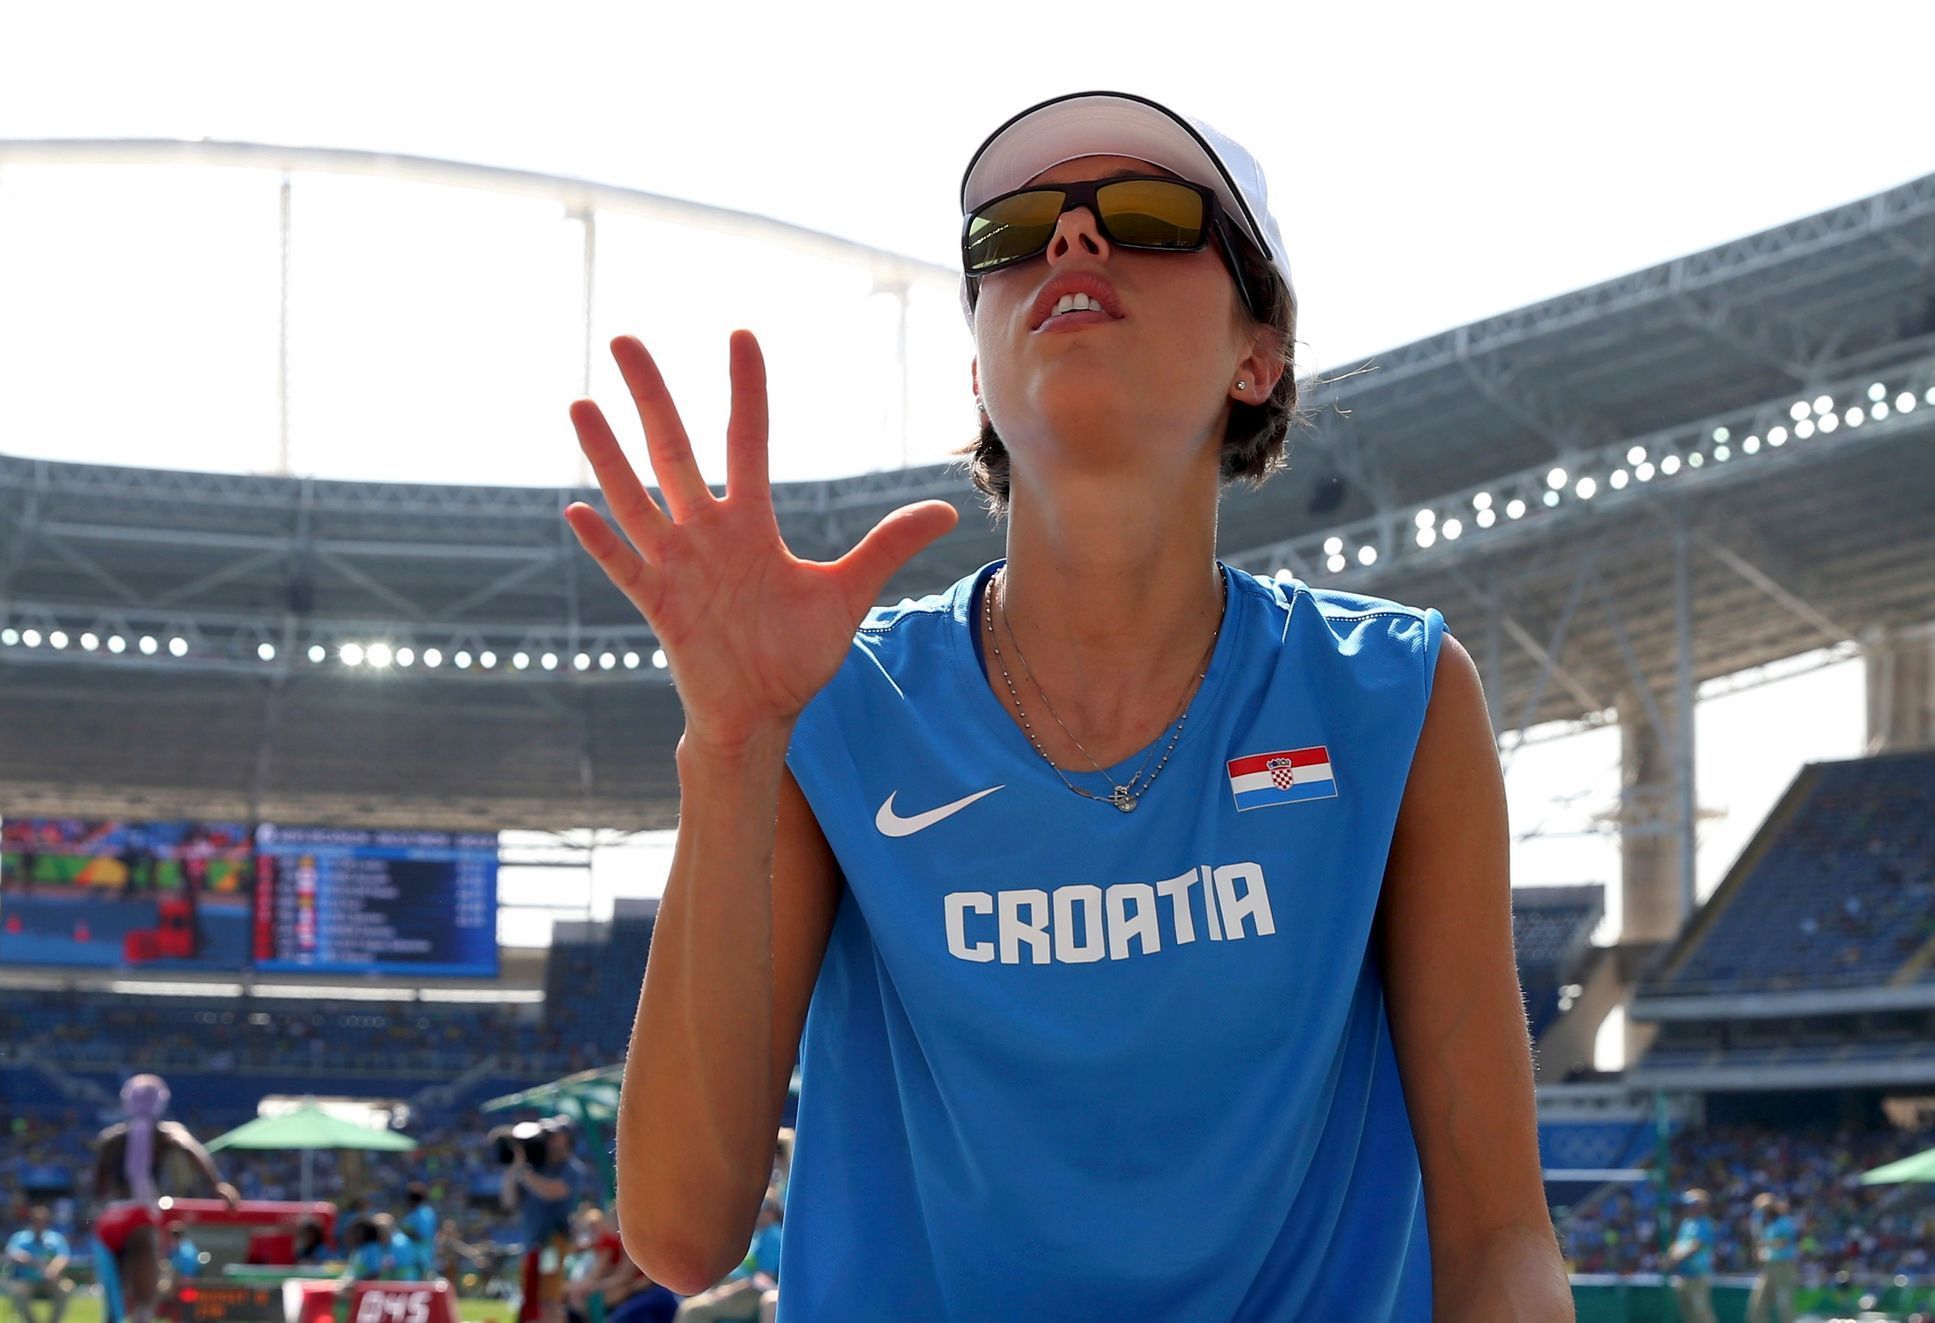 OH 2016 - atletika, skok do výšky Ž: Blanka Vlašićová